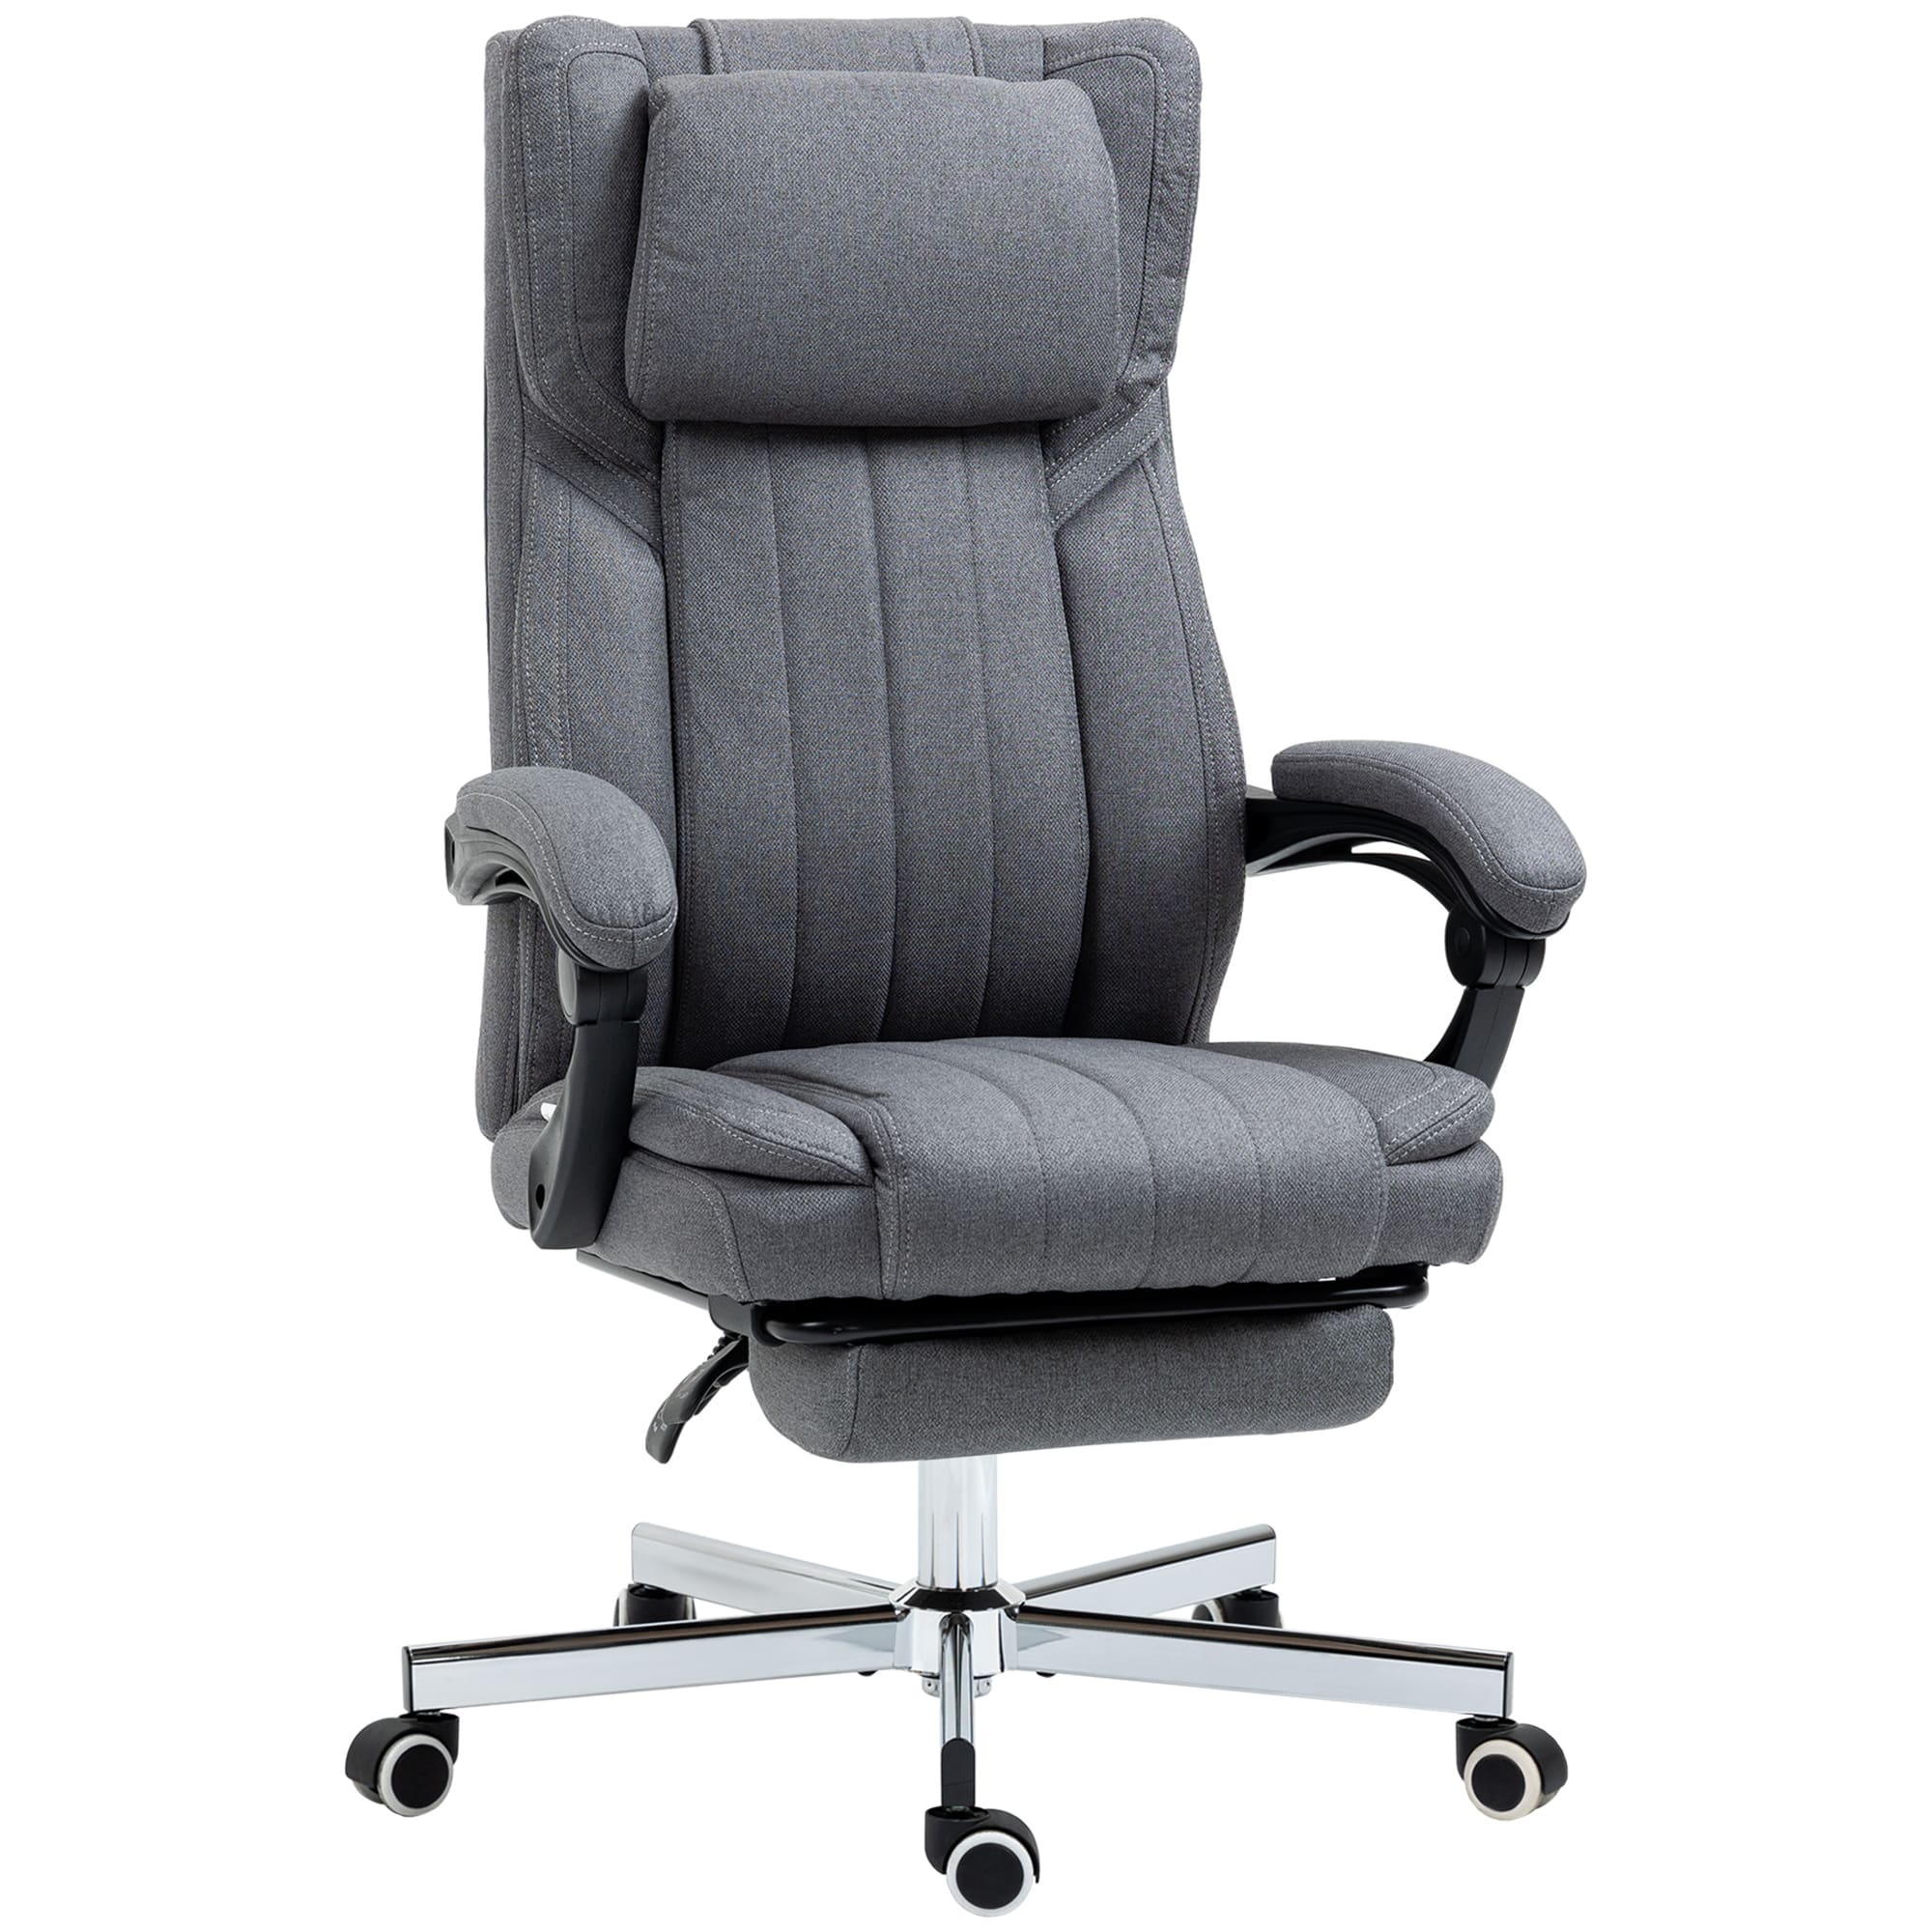 Achat Vinsetto Chaise de bureau fauteuil bureau massant pivotant hauteur  réglable tissu lin marron en gros